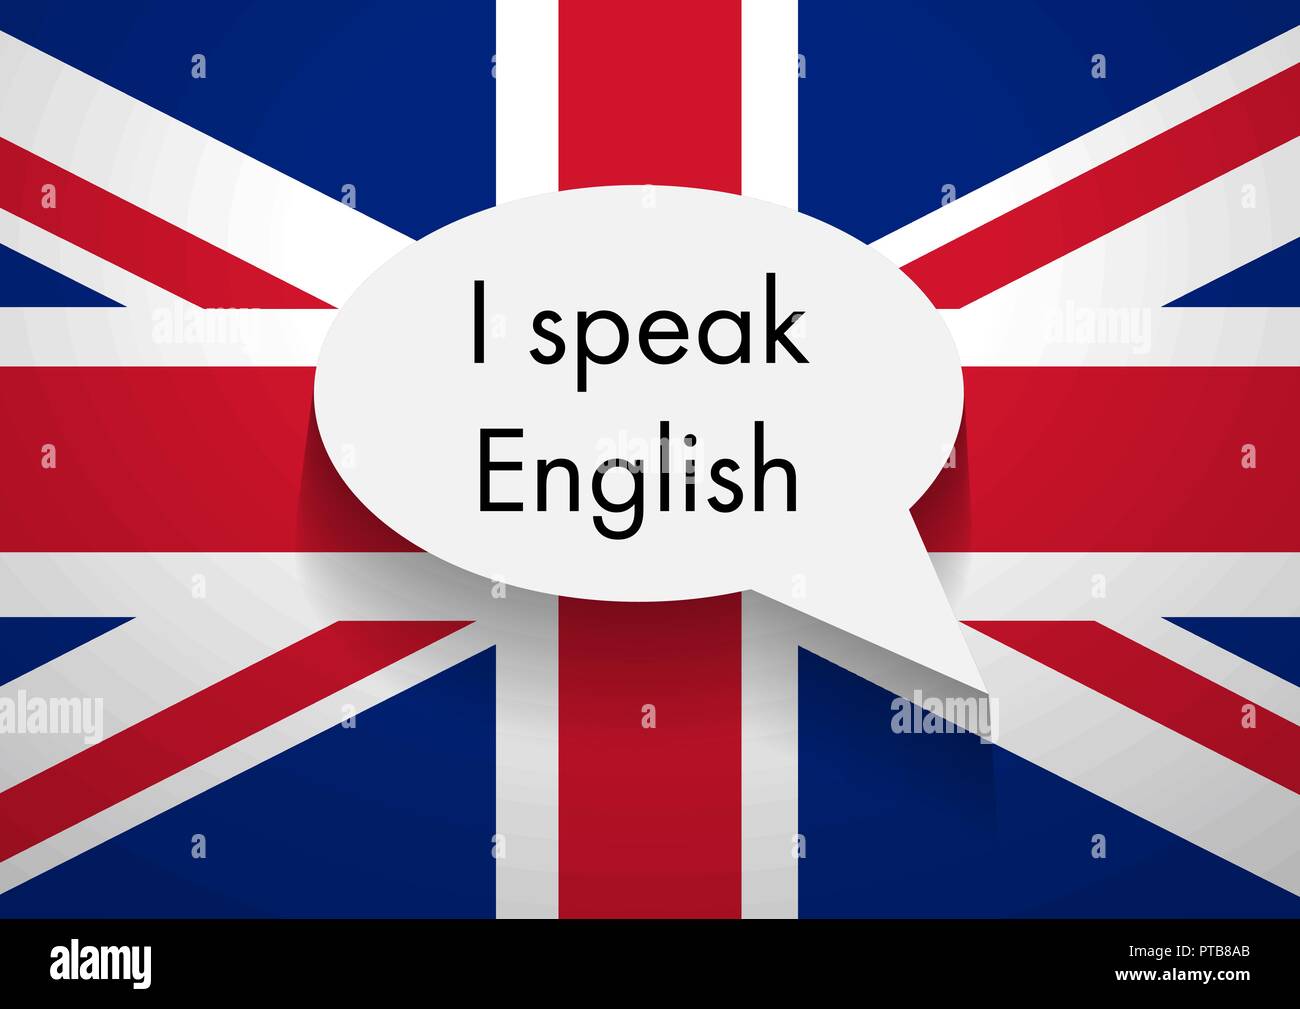 Английский открывает мир. Я говорю на английском языке. Английский язык в совершенстве. Знаю английский. Я знаю английский язык.